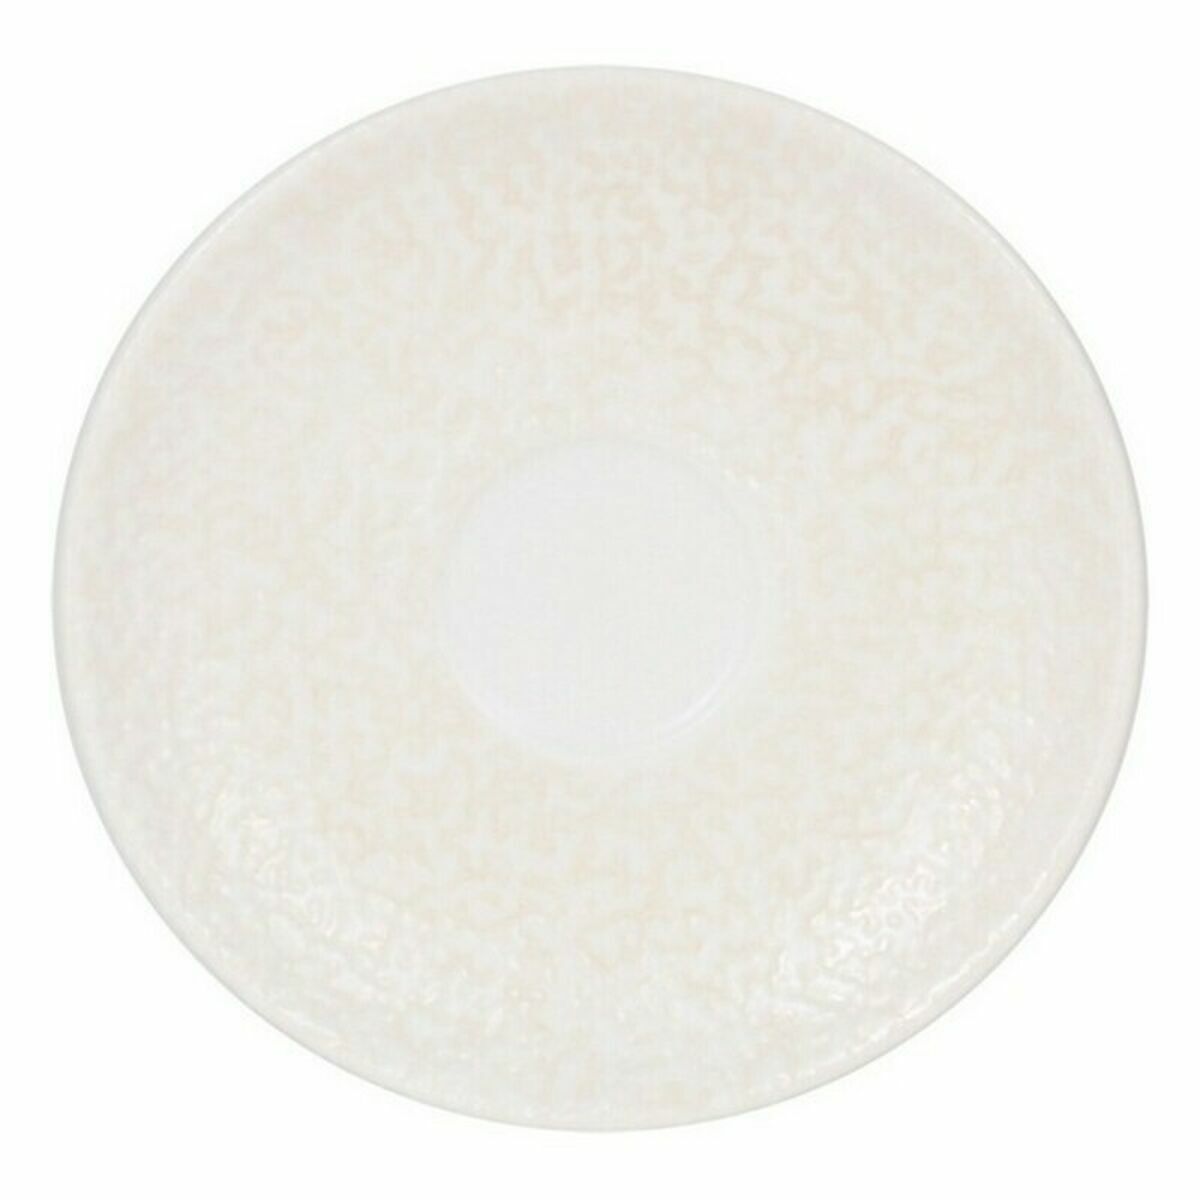 Teller Inde Atelier Porzellan Weiß Ø 12 cm (6 Stück) (ø 12 cm)